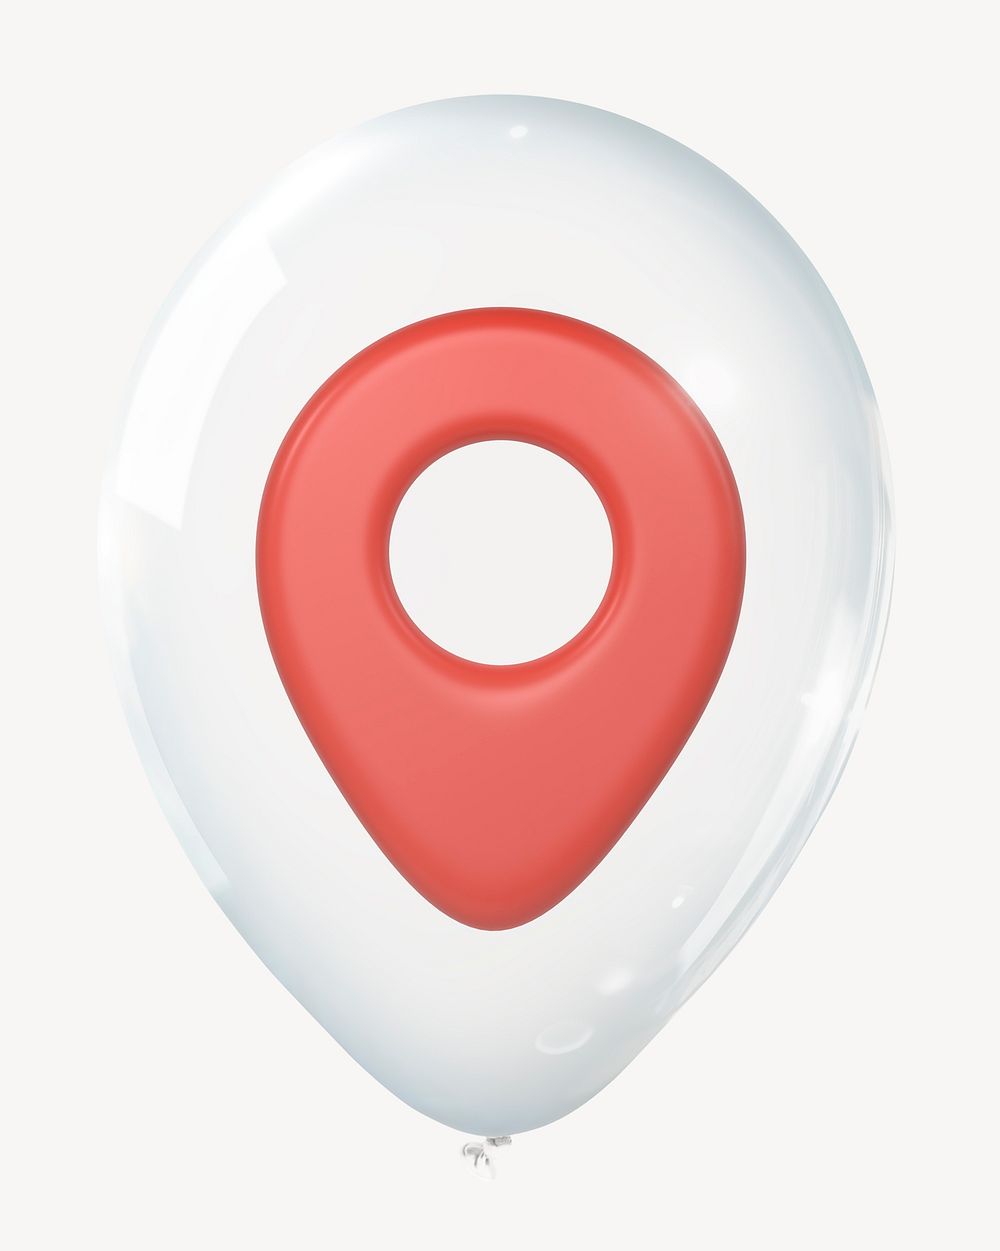 Location pin 3D balloon, social media clipart